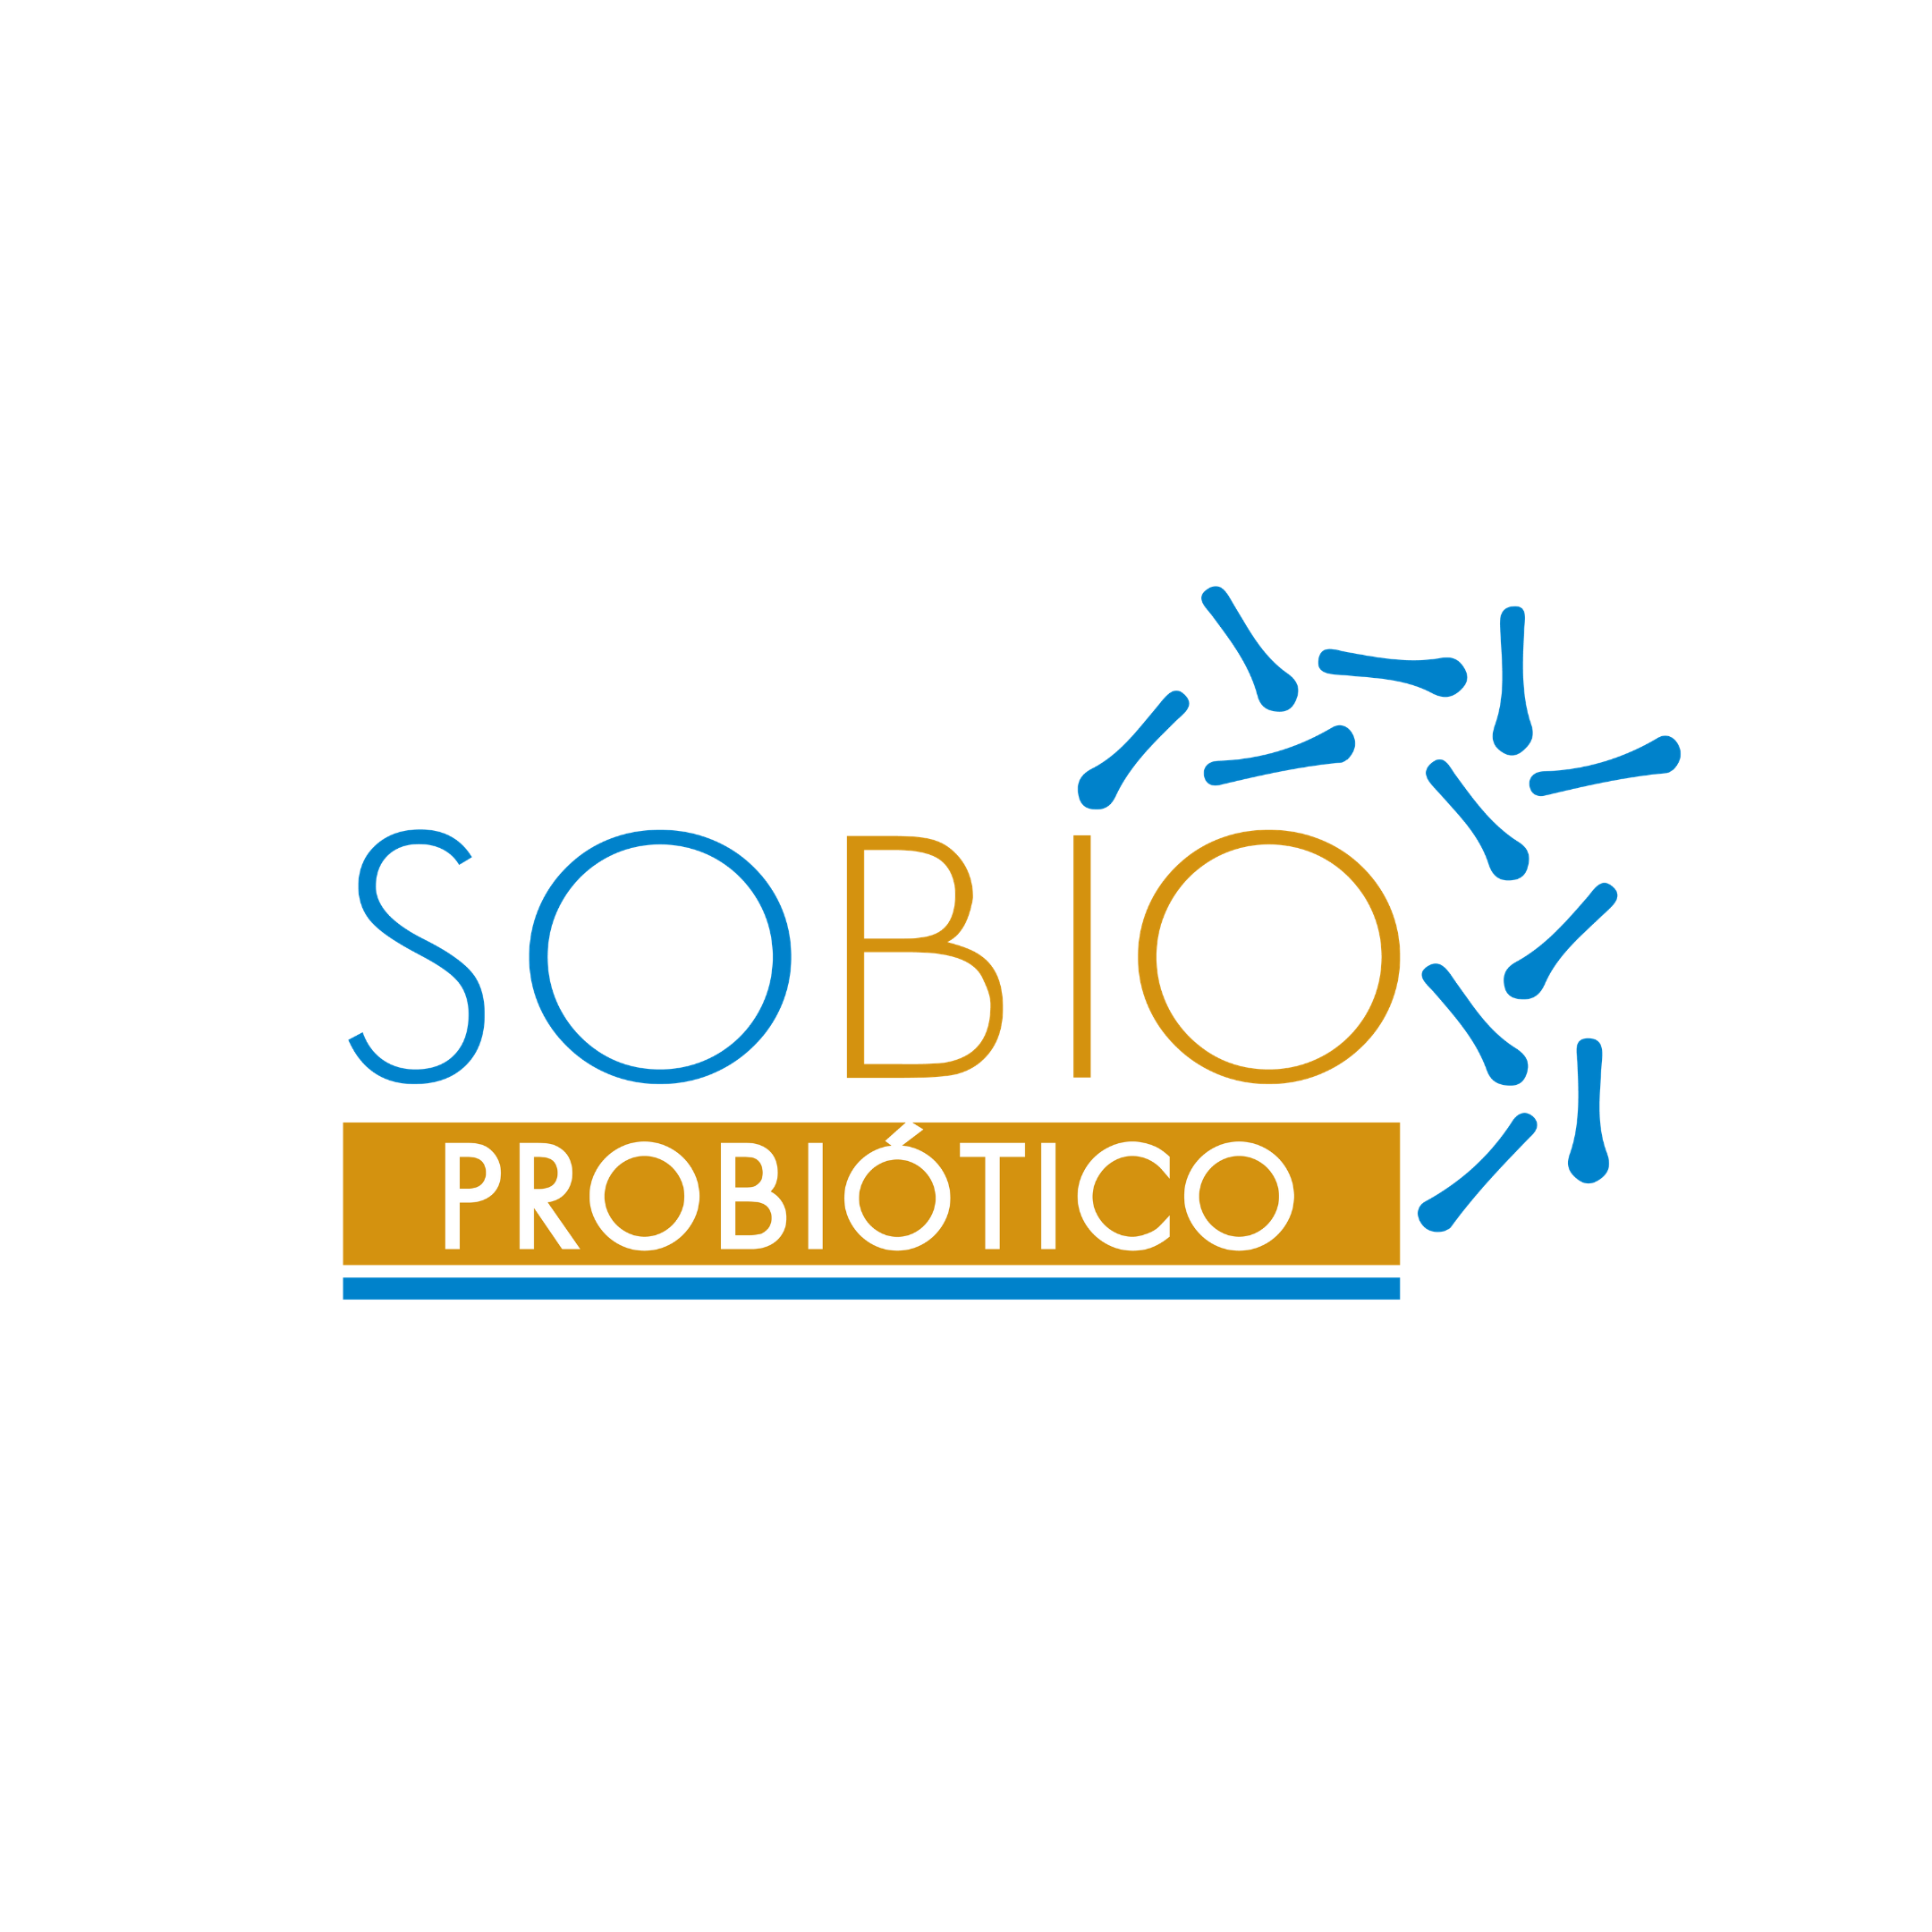 5  Sobio Probiótico microorganismos para control del metabolismo animal. De Sobiotech.png